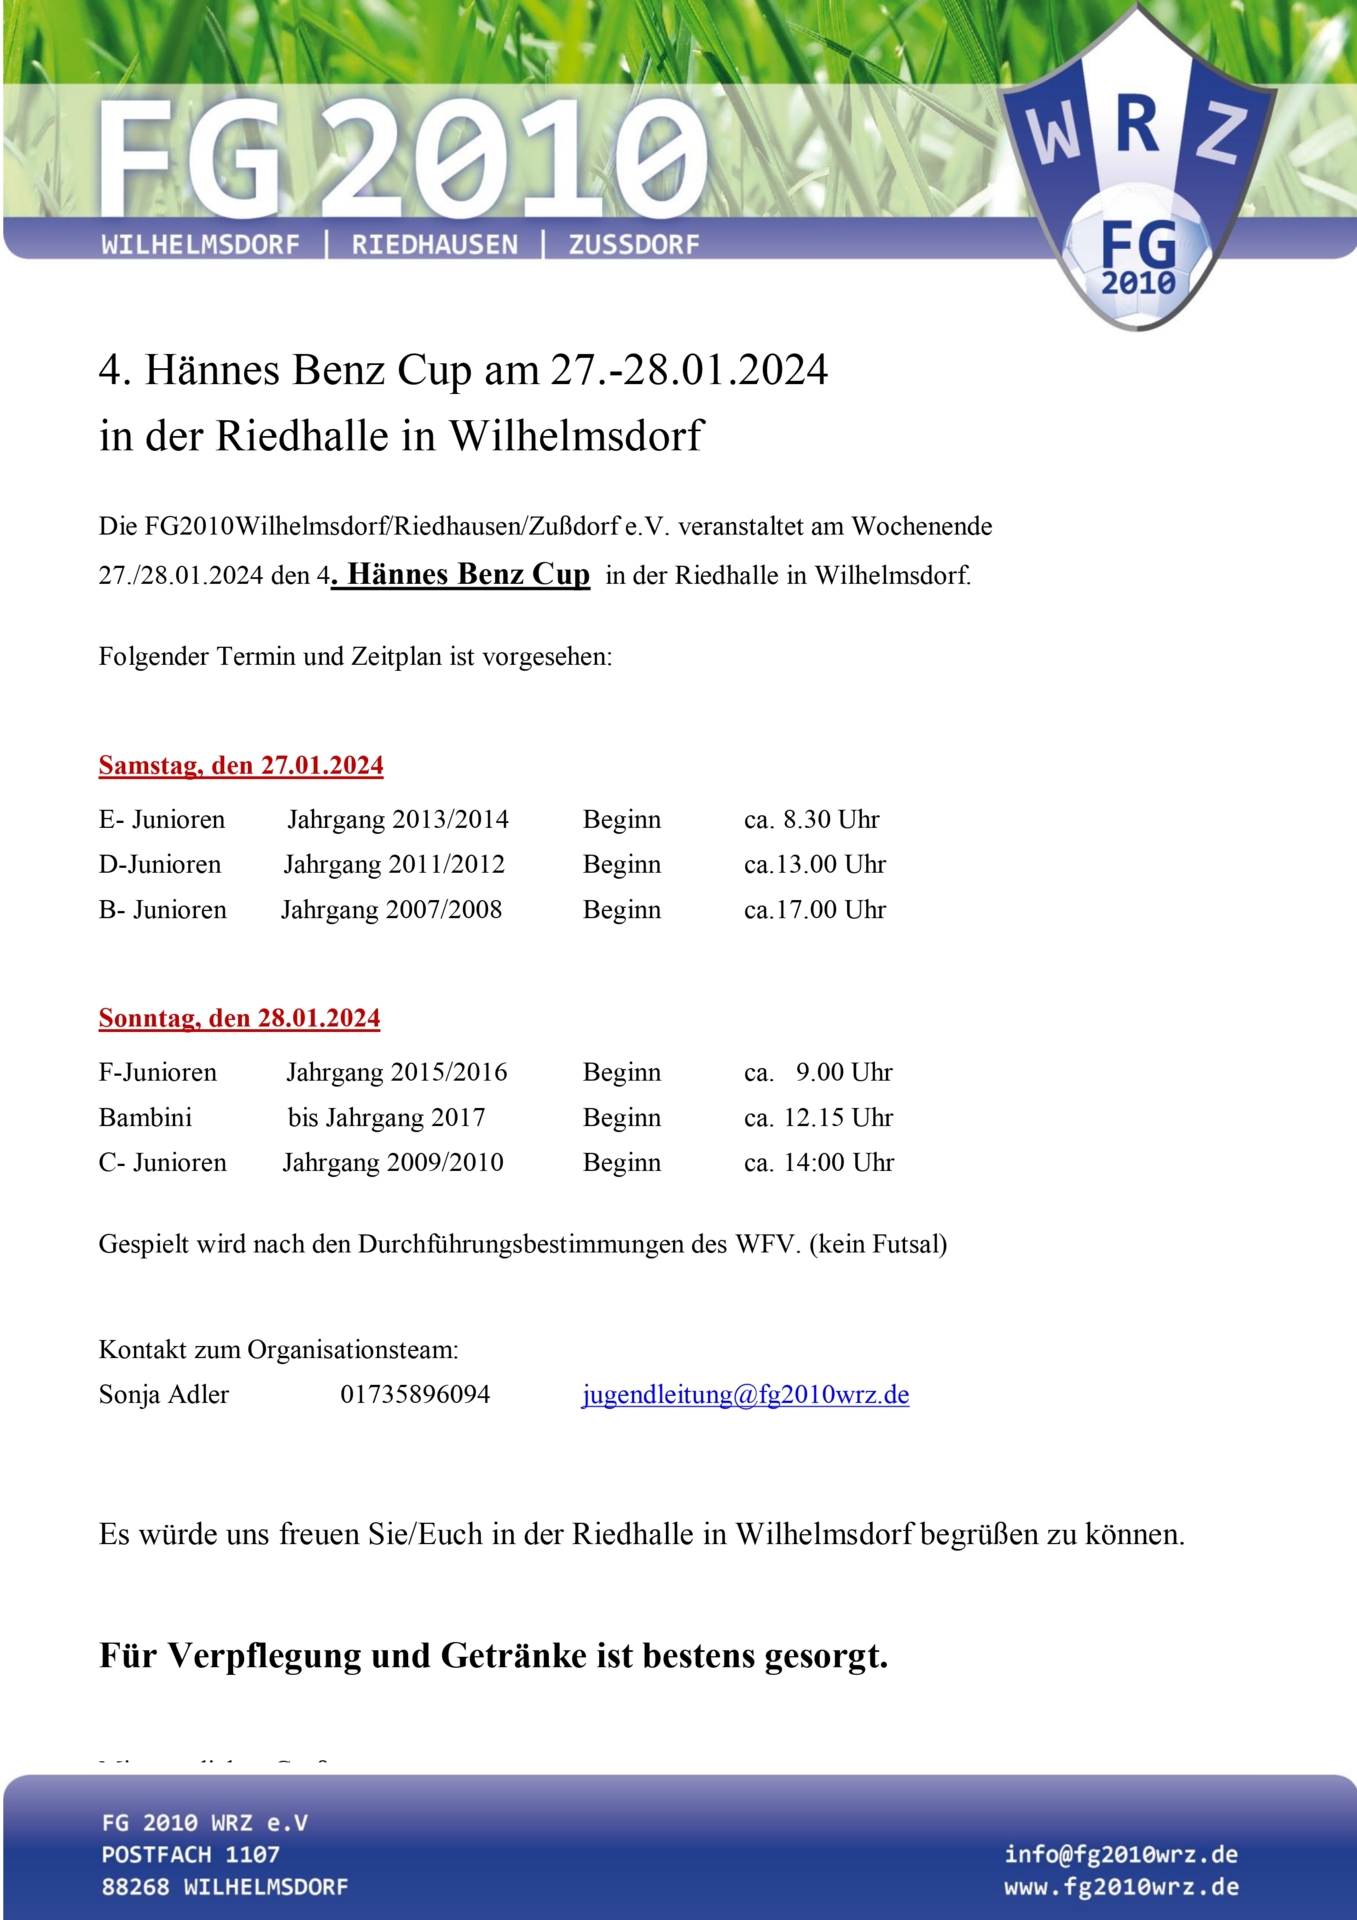 Hännes Benz Cup